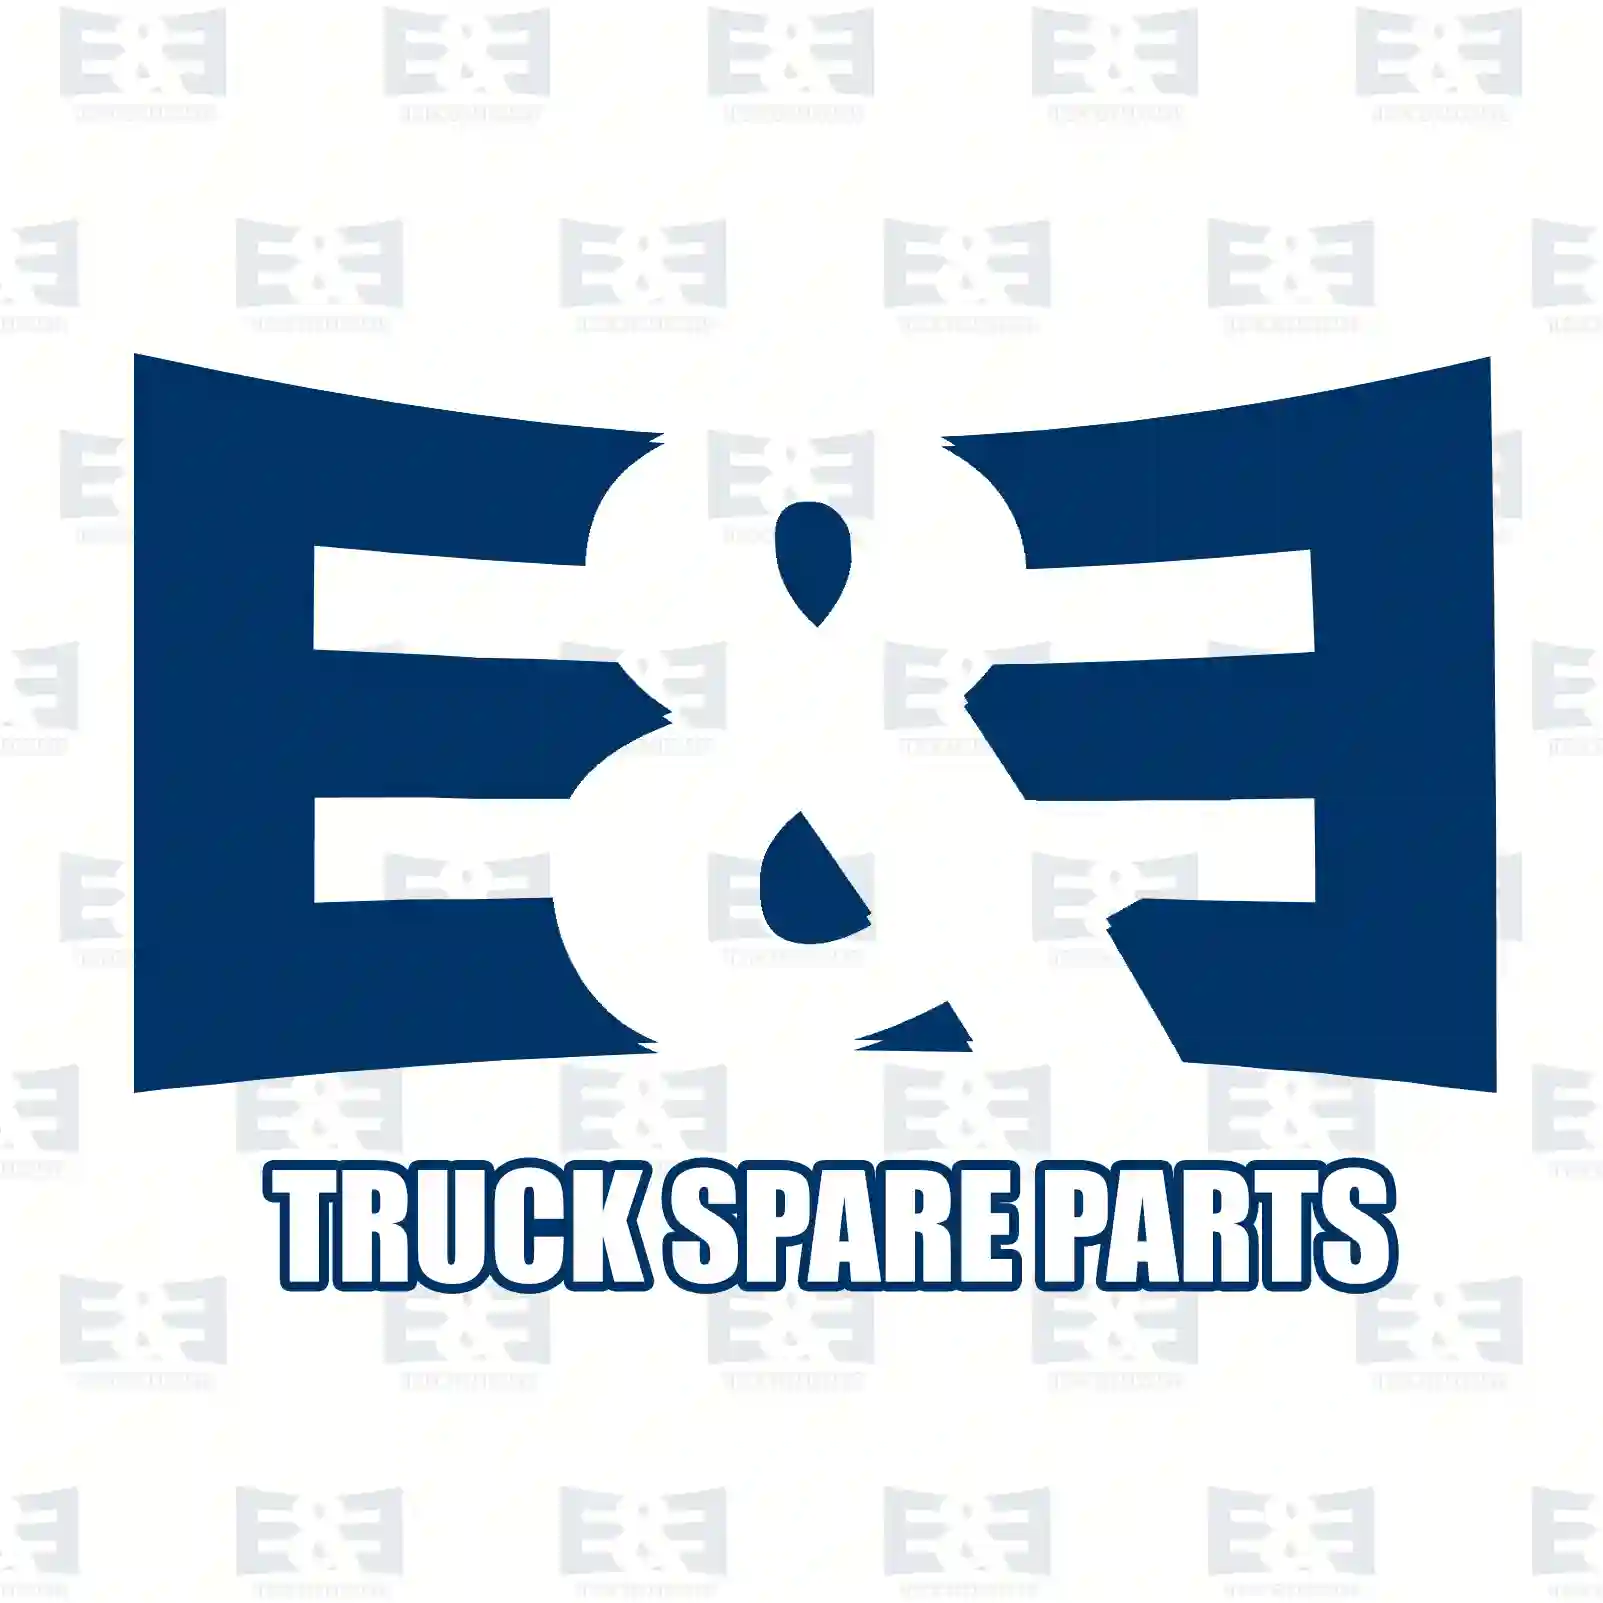 Bell hub, 2E2278139, 3463504209, 94235 ||  2E2278139 E&E Truck Spare Parts | Truck Spare Parts, Auotomotive Spare Parts Bell hub, 2E2278139, 3463504209, 94235 ||  2E2278139 E&E Truck Spare Parts | Truck Spare Parts, Auotomotive Spare Parts